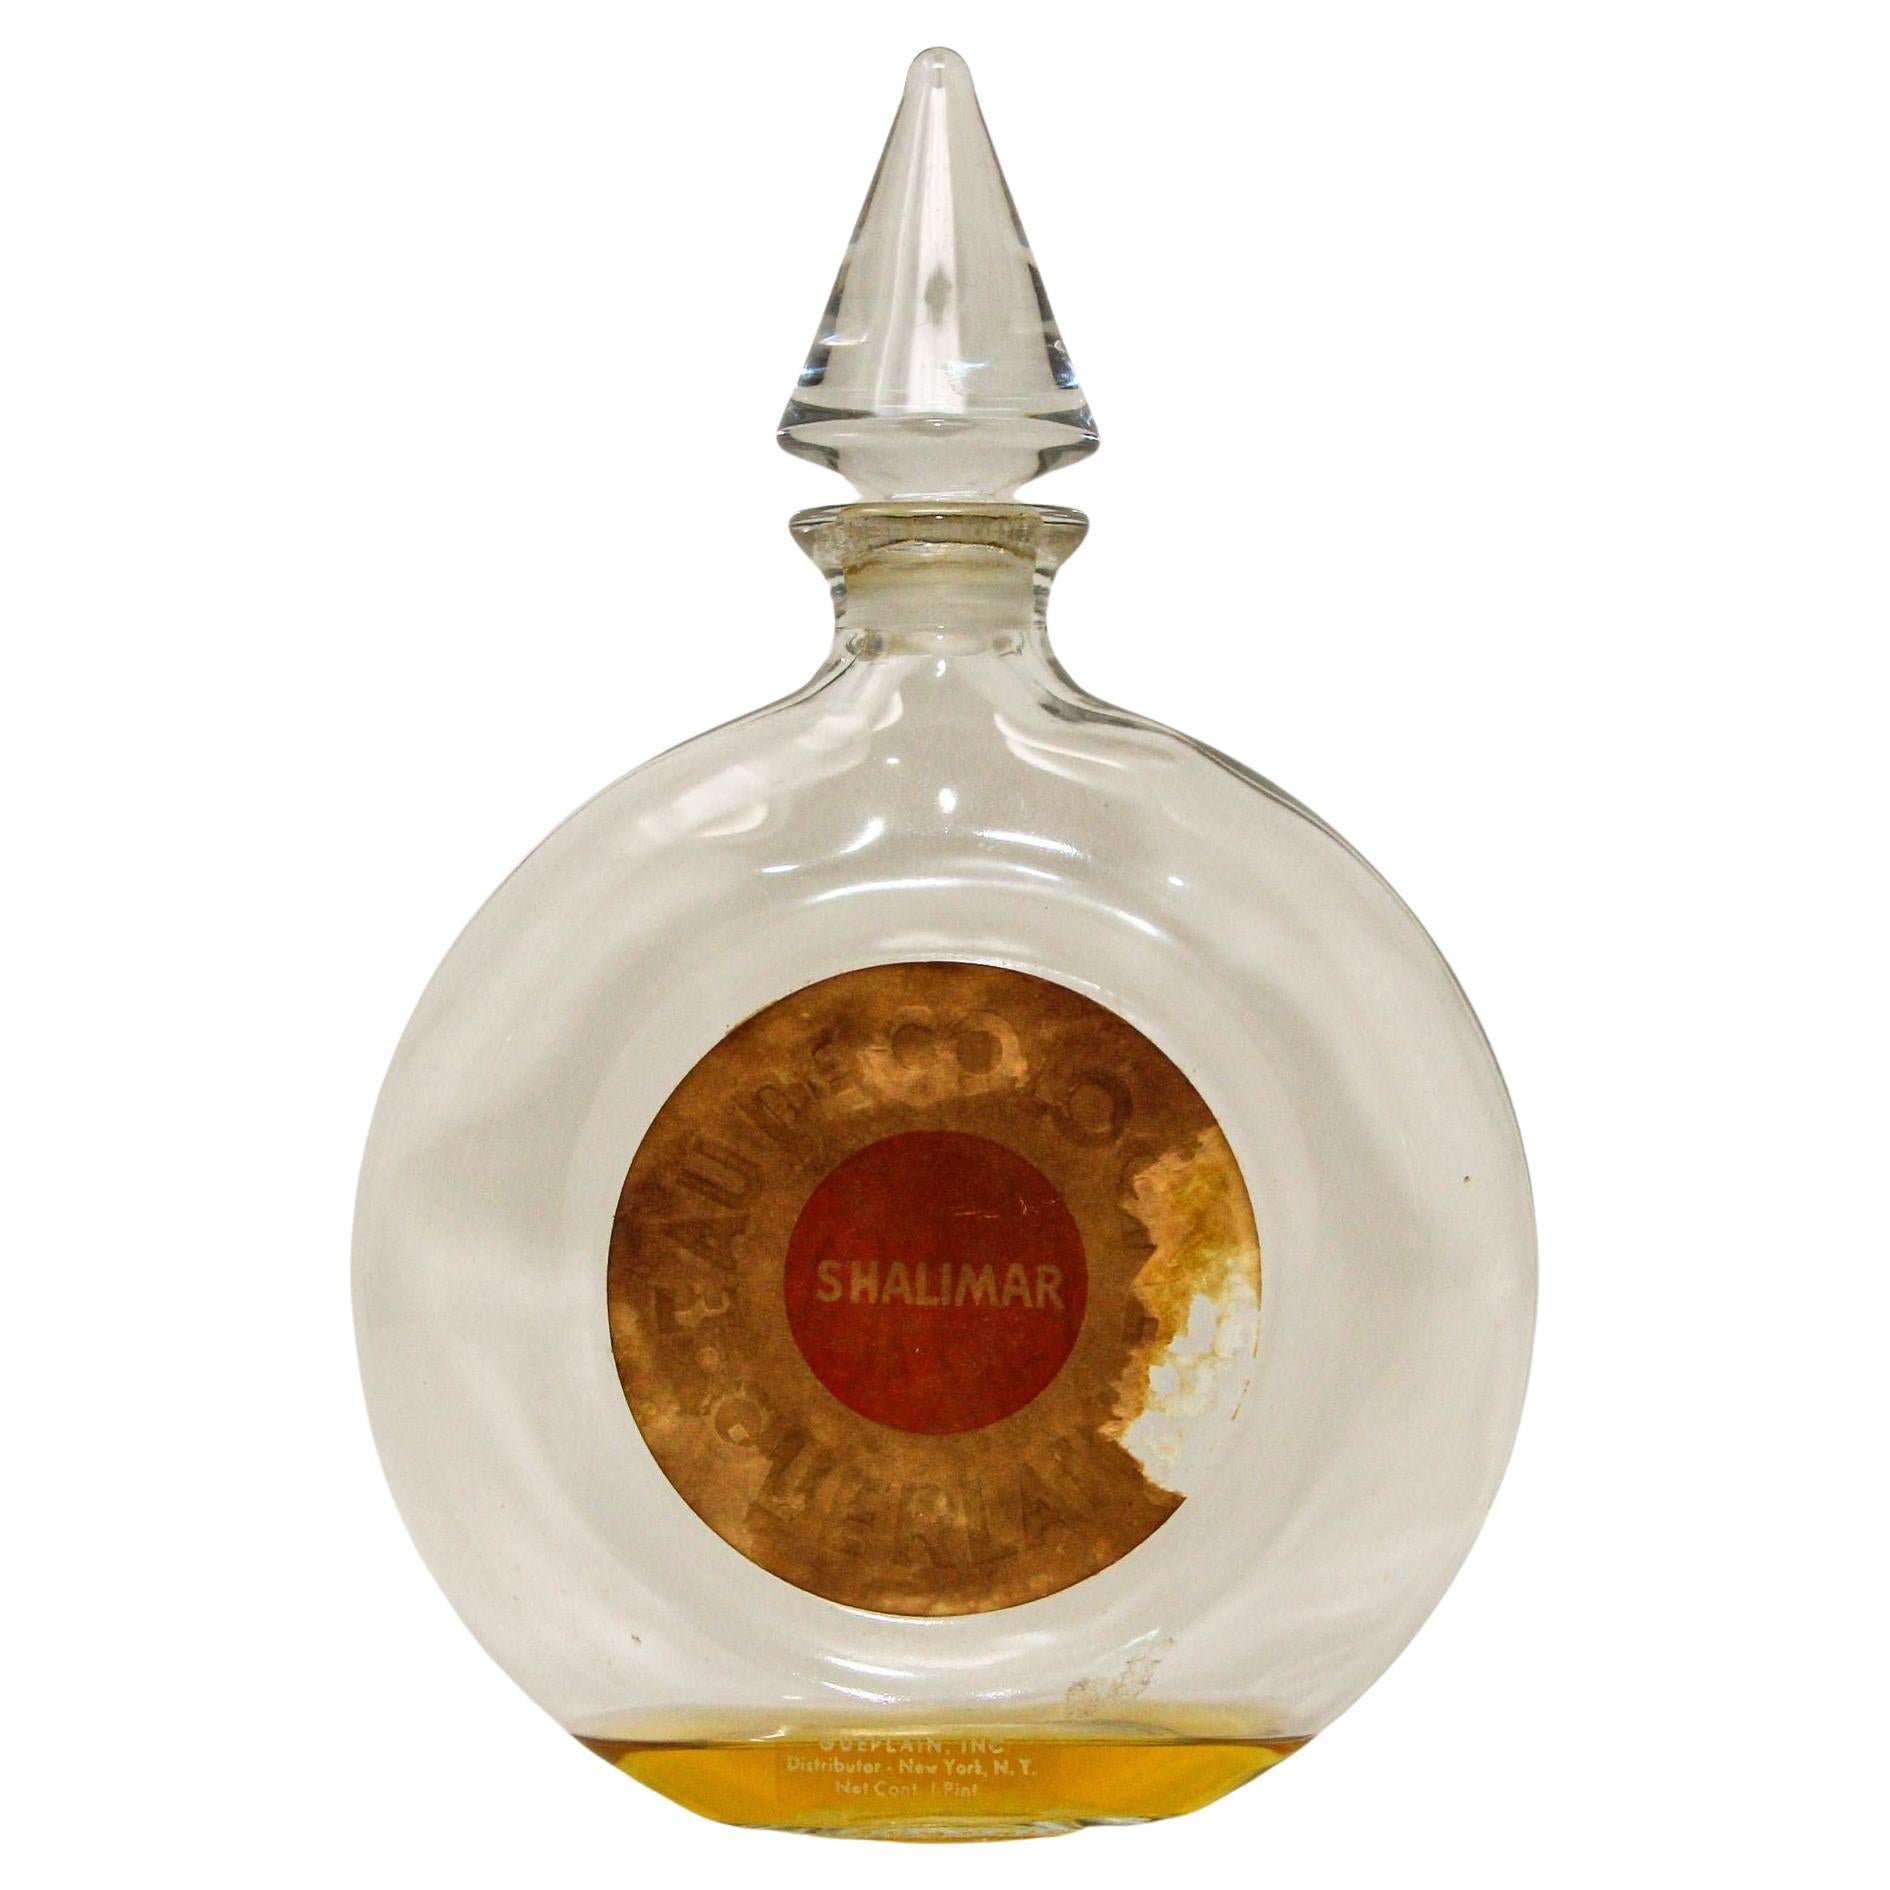 Vintage Guerlain Shalimar Cologne Perfume Bottle Large Collectible Paris  France